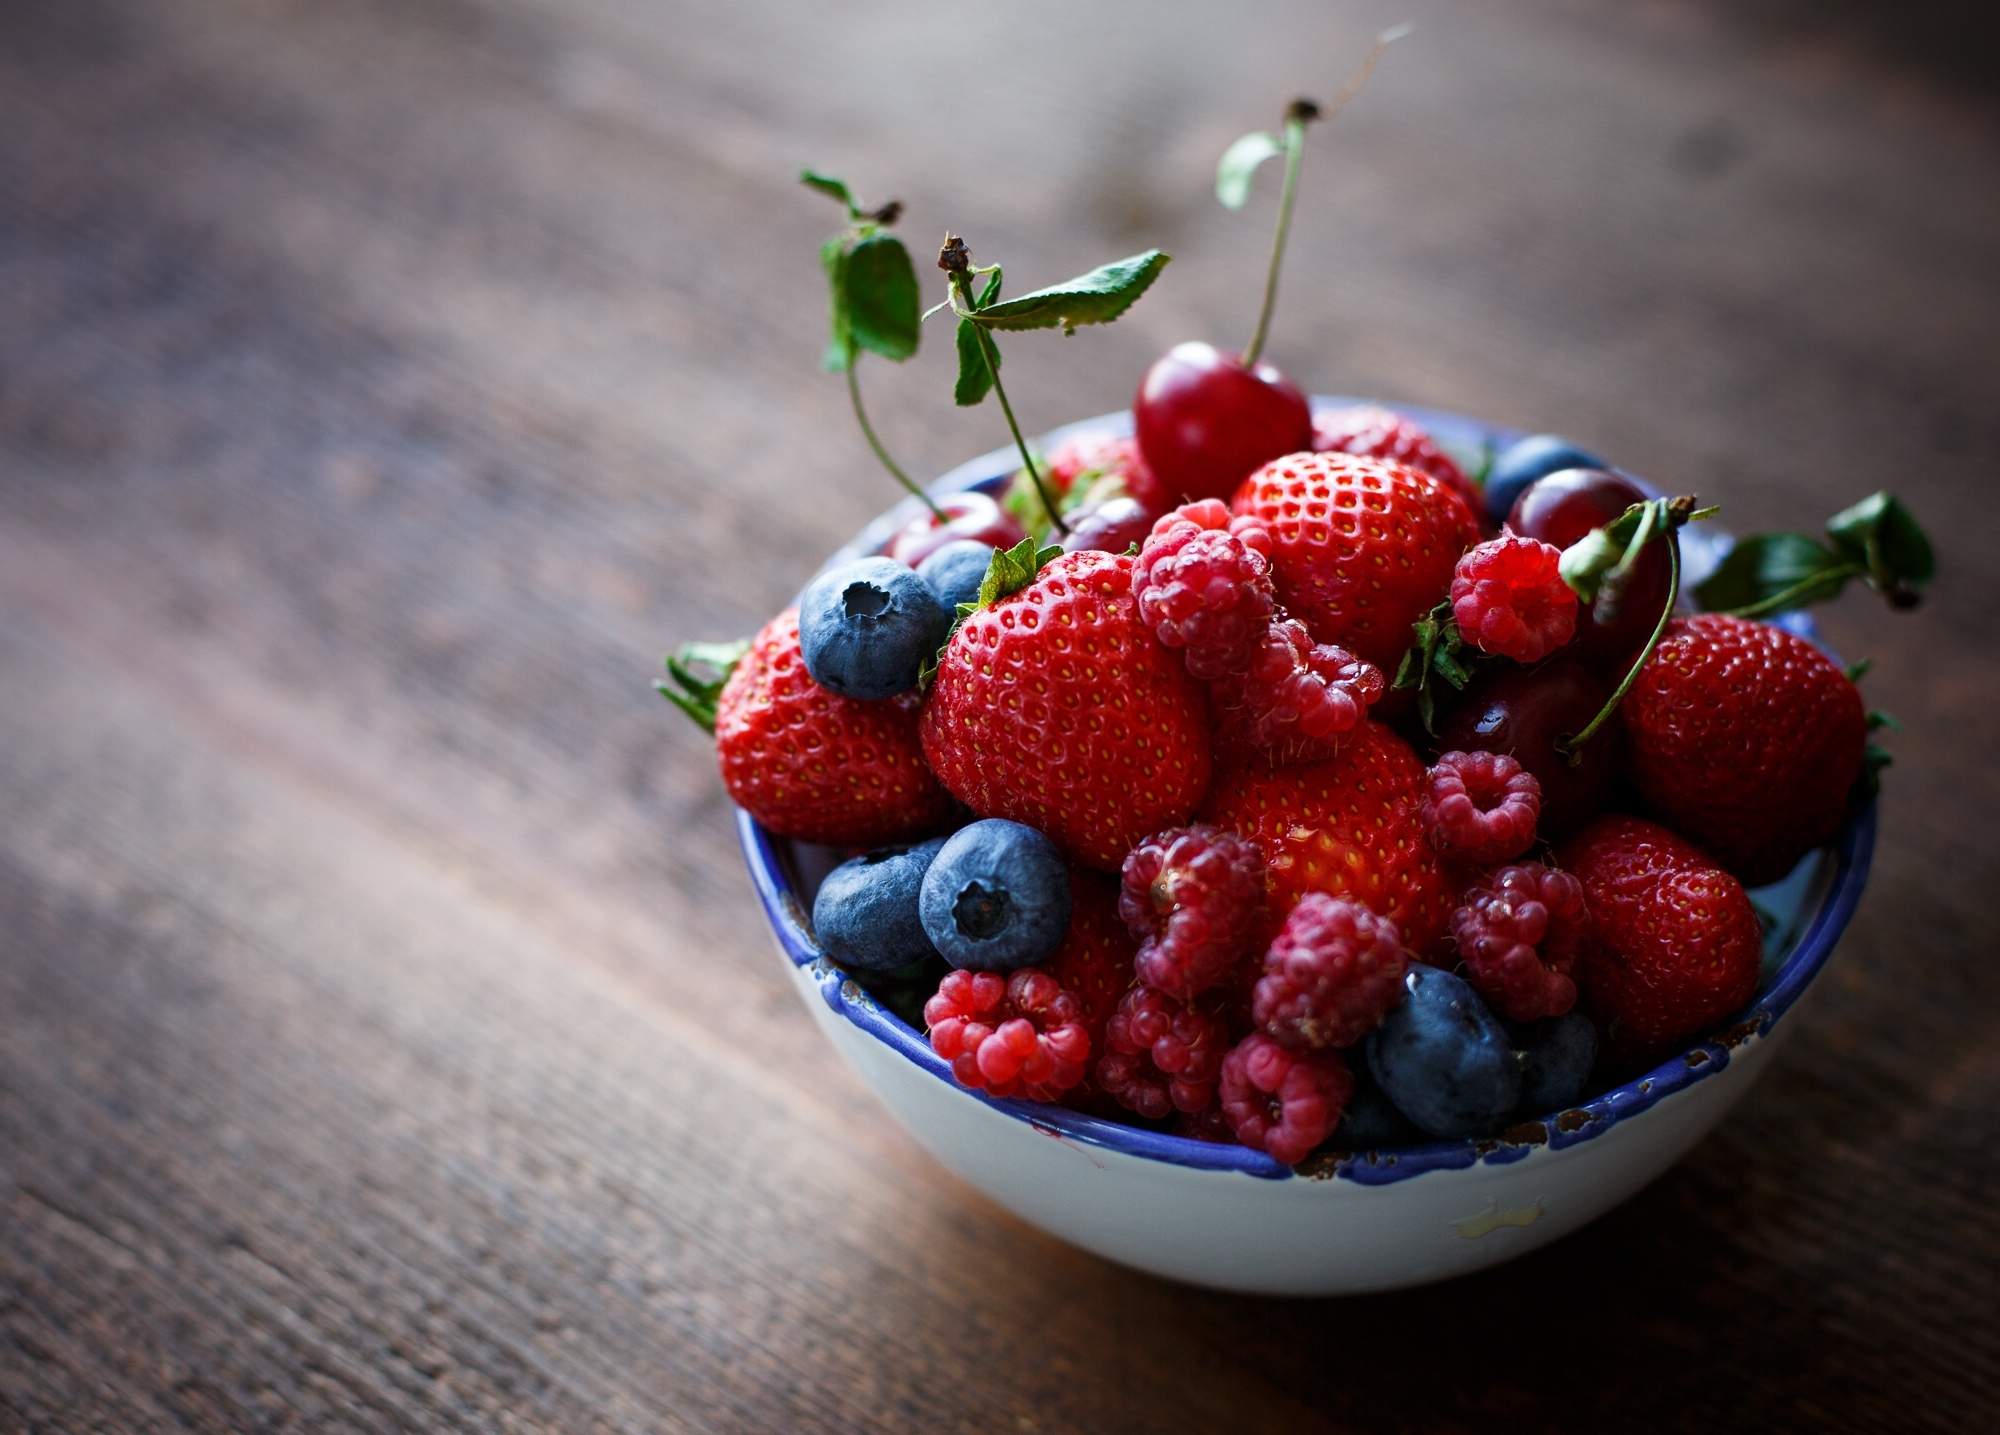 raspberry, berries, food, plate